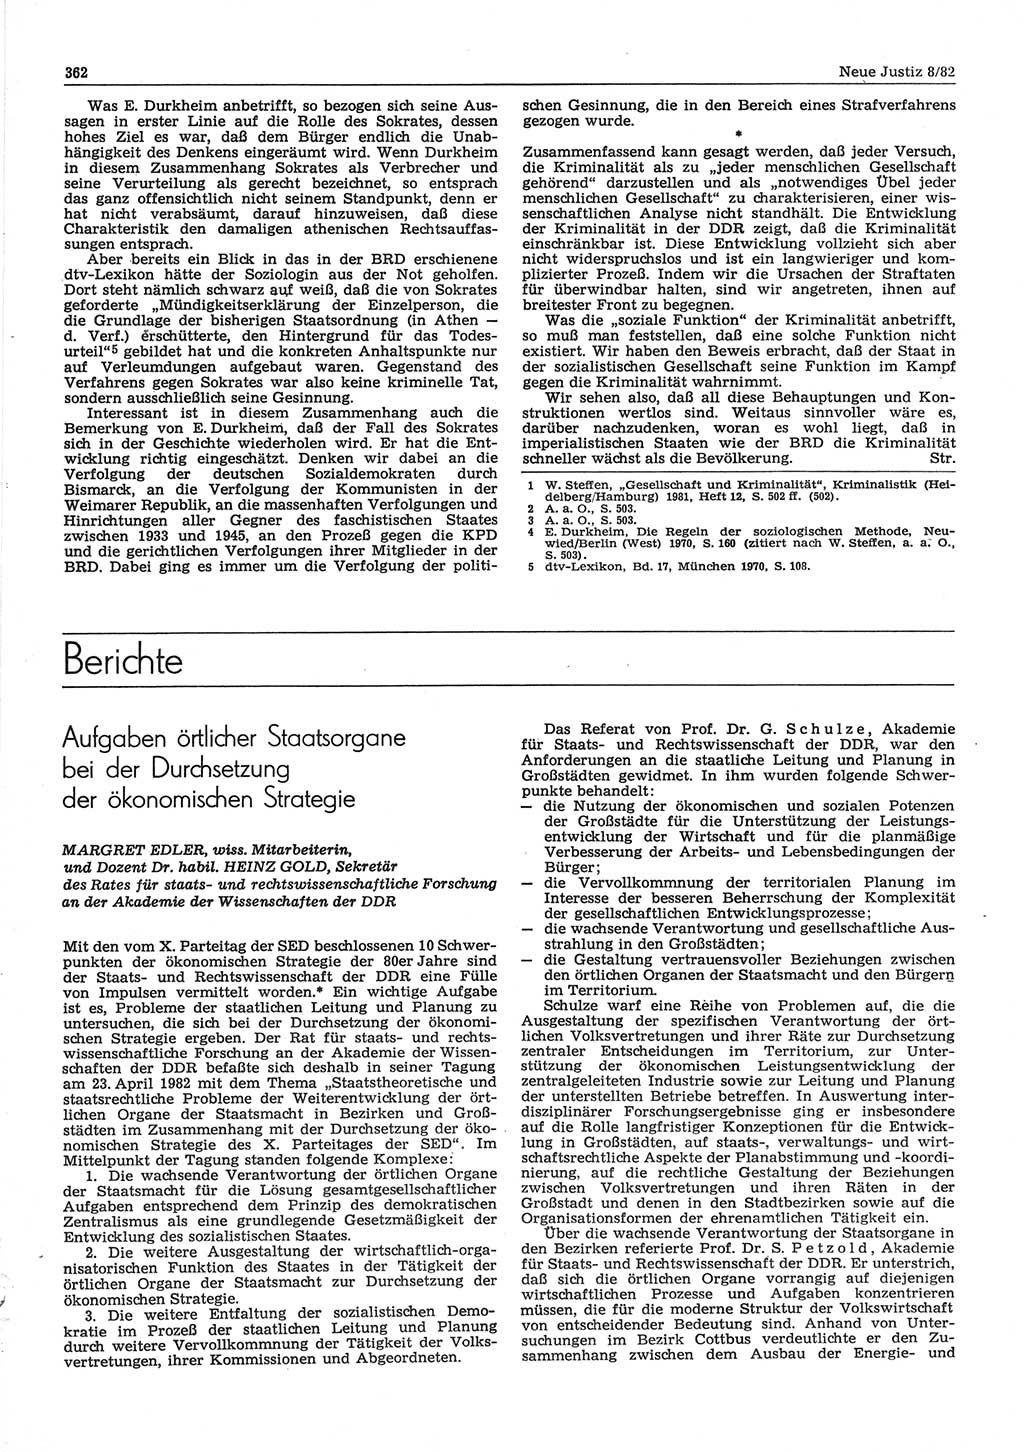 Neue Justiz (NJ), Zeitschrift für sozialistisches Recht und Gesetzlichkeit [Deutsche Demokratische Republik (DDR)], 36. Jahrgang 1982, Seite 362 (NJ DDR 1982, S. 362)